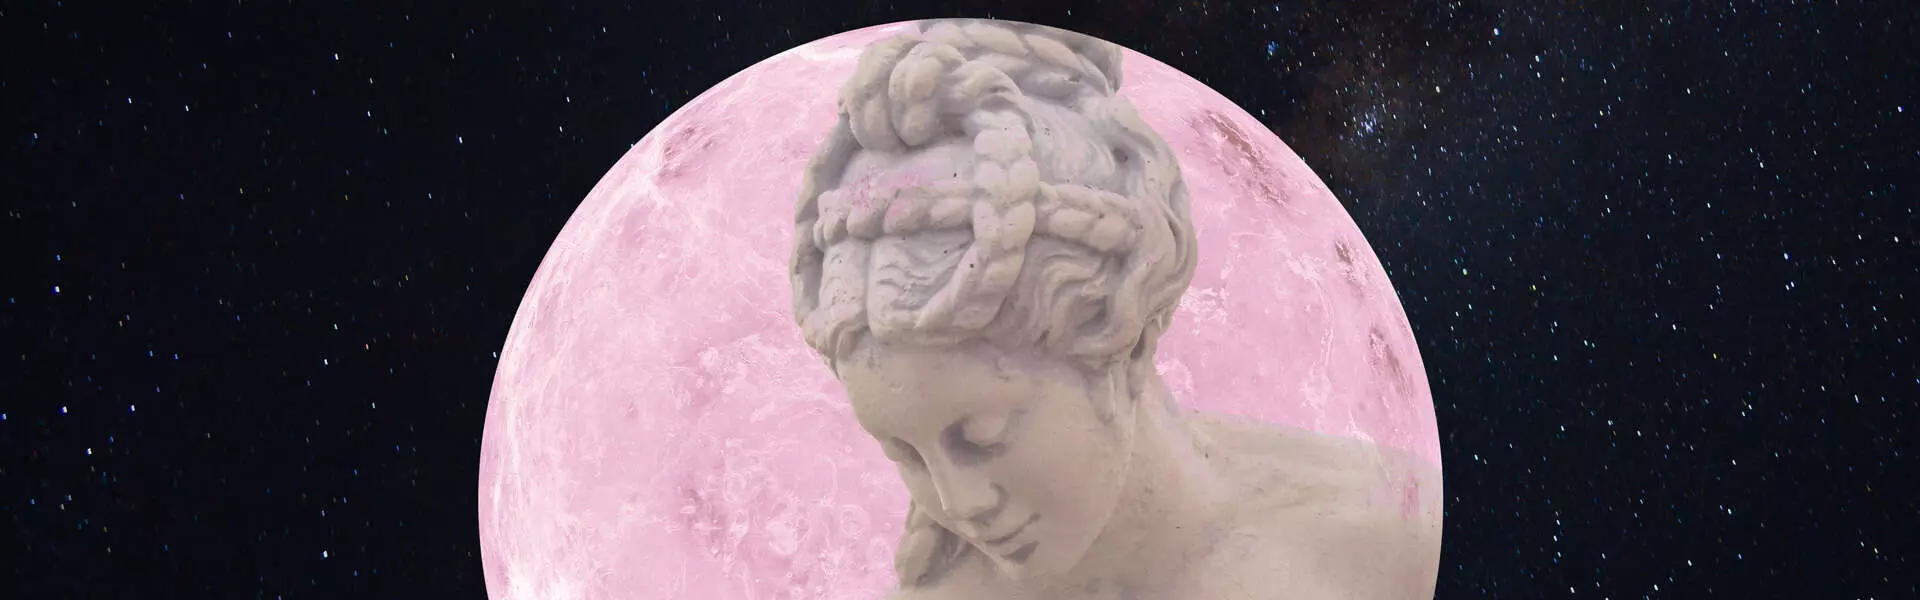 Venus dalam astrologi - Planet kasih sayang dan keharmonian